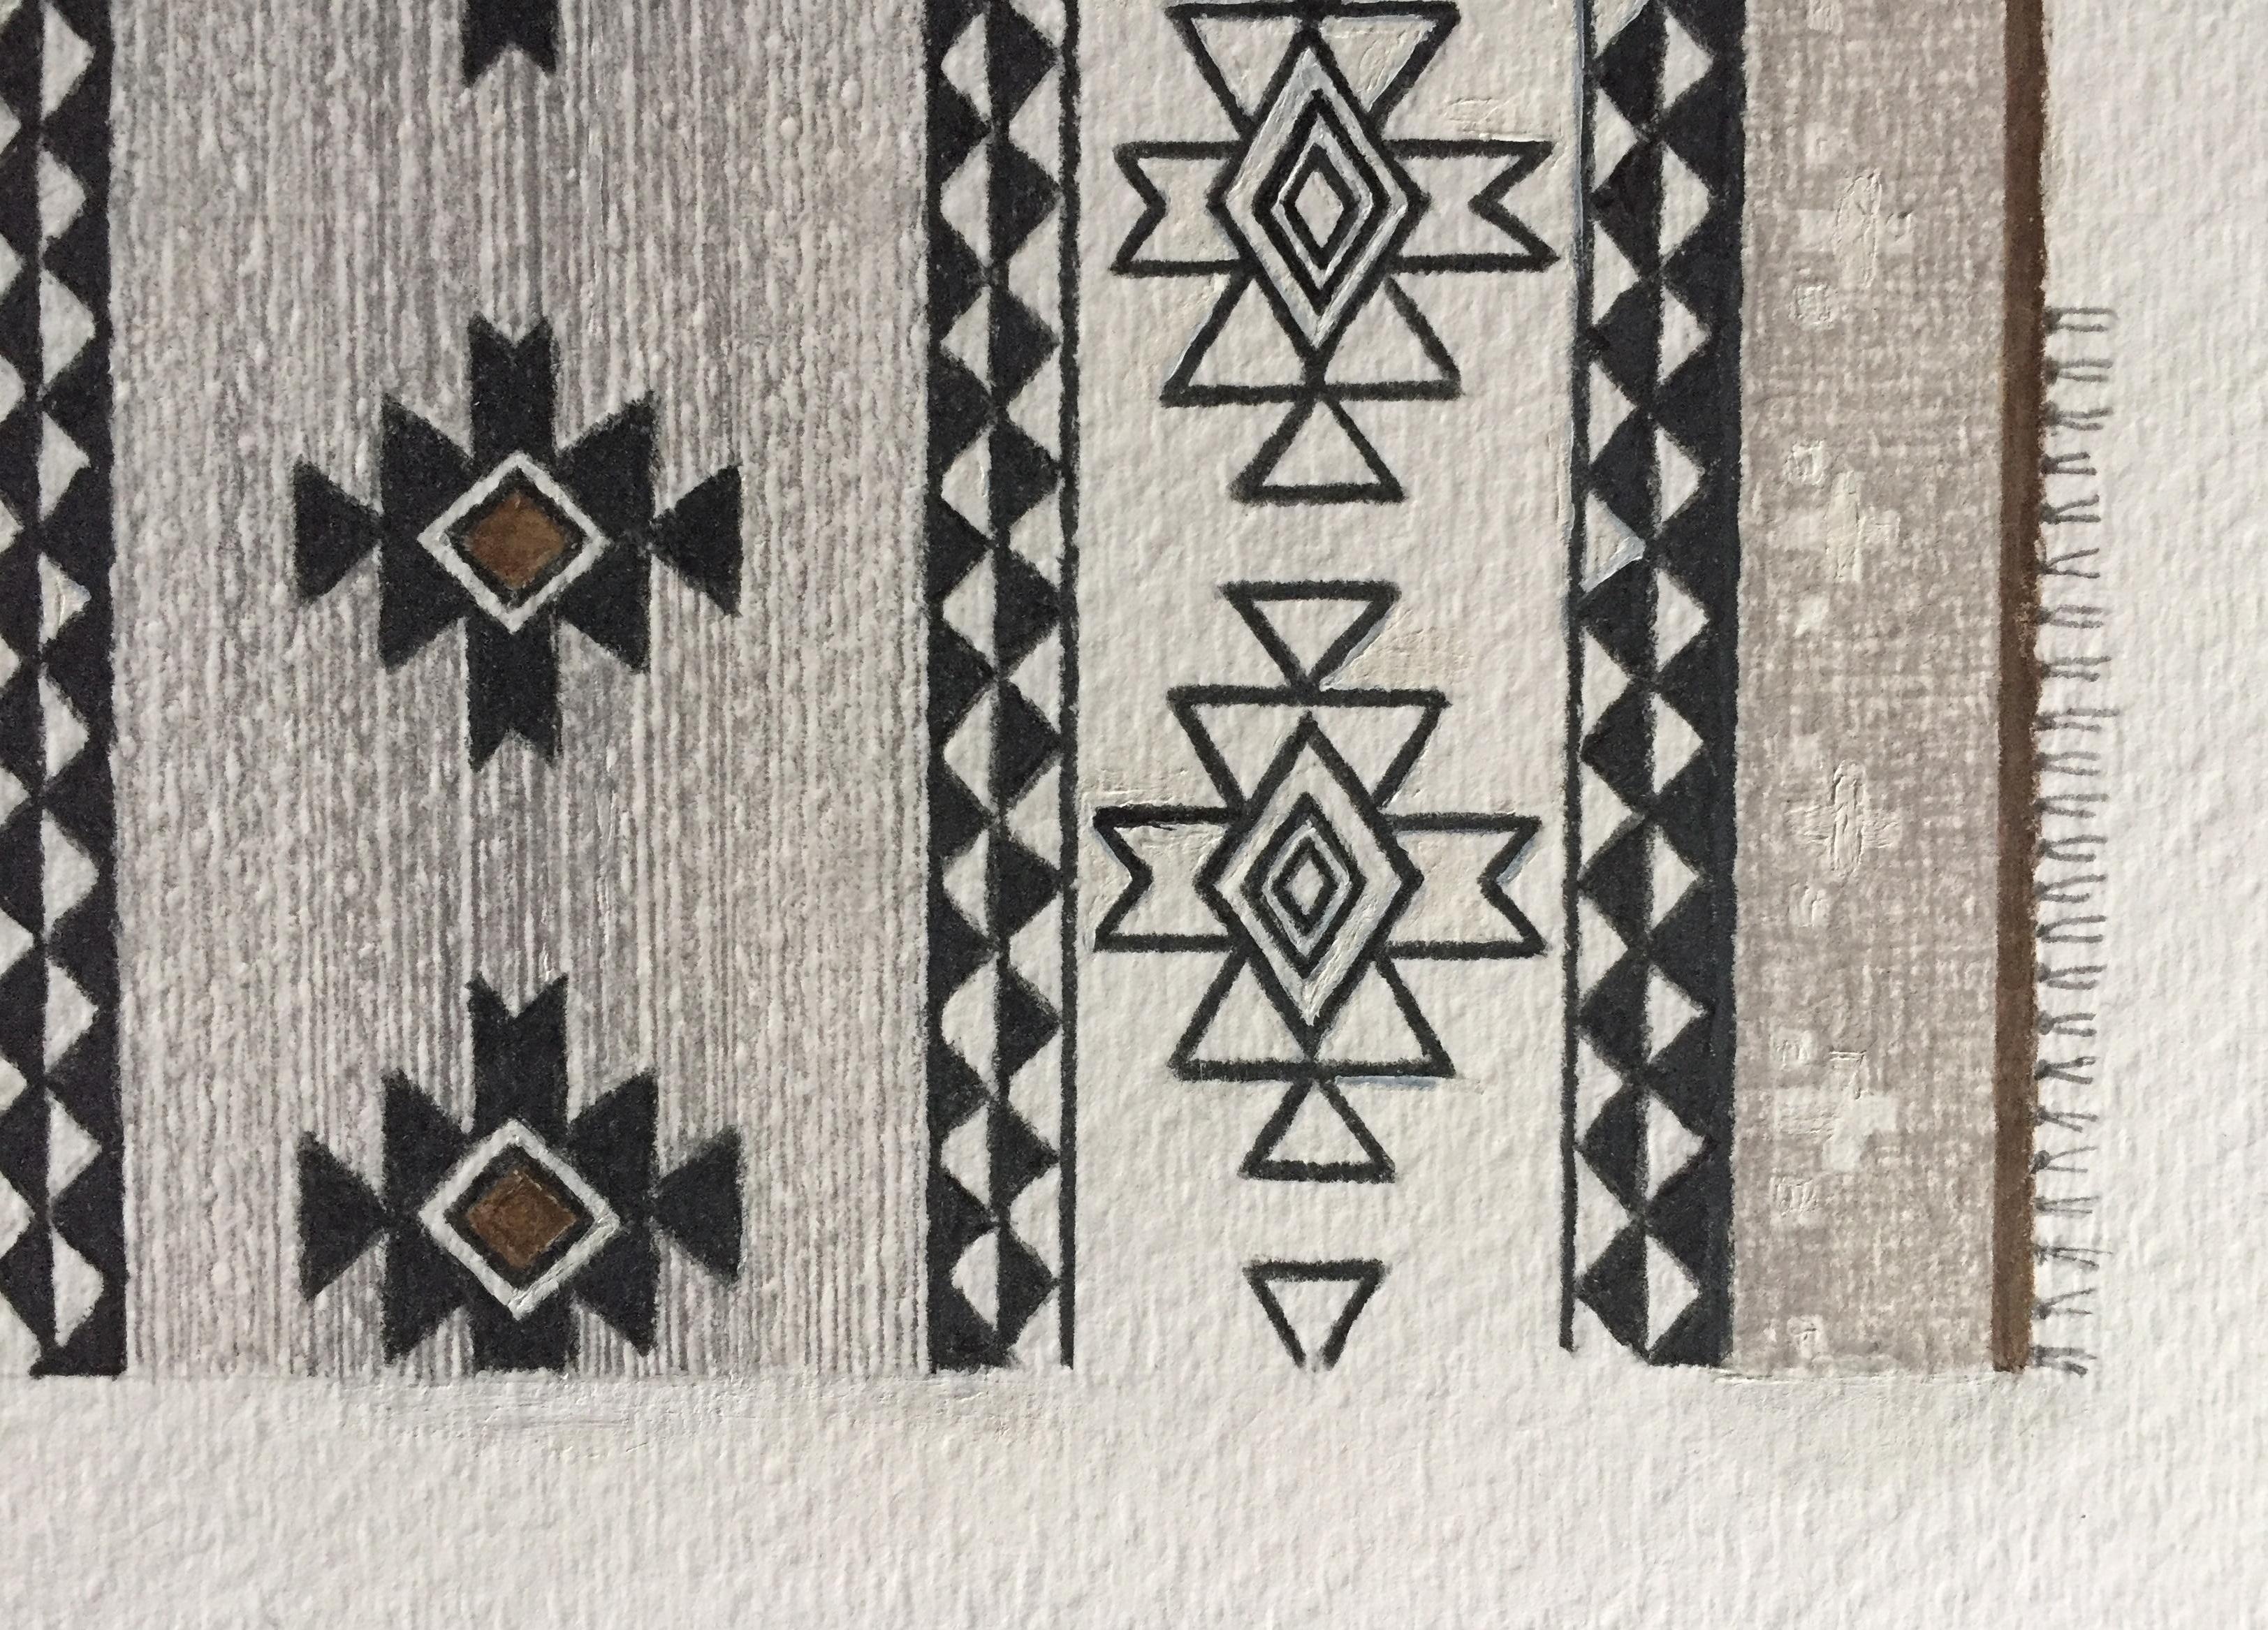 Dieses detaillierte Kunstwerk auf Papier legt den Schwerpunkt auf Design und Komposition. Ein von Navajo inspiriertes Teppichmotiv wird mit traditionellen Designelementen und einem modernen Ergebnis gestaltet. Symmetrie und geometrische Muster